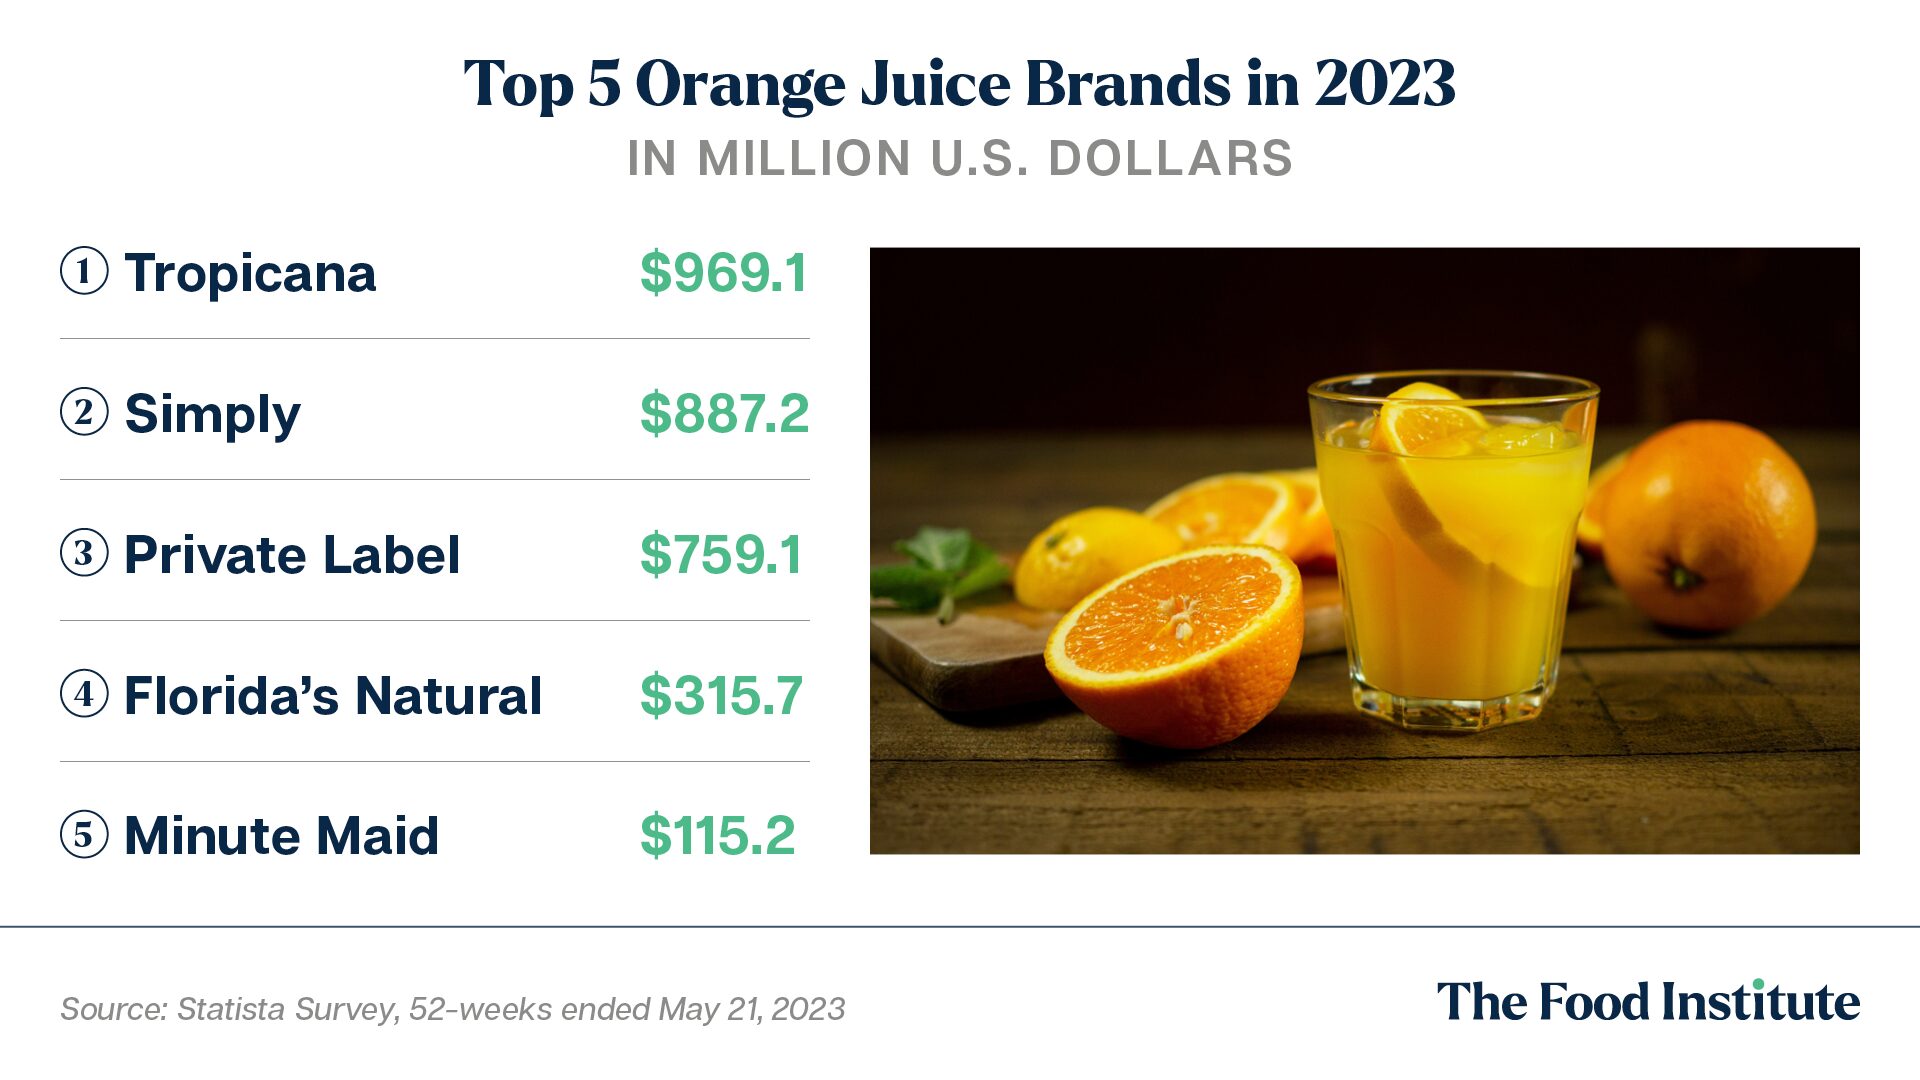 Top 5 Orange Juice Brands in 2023